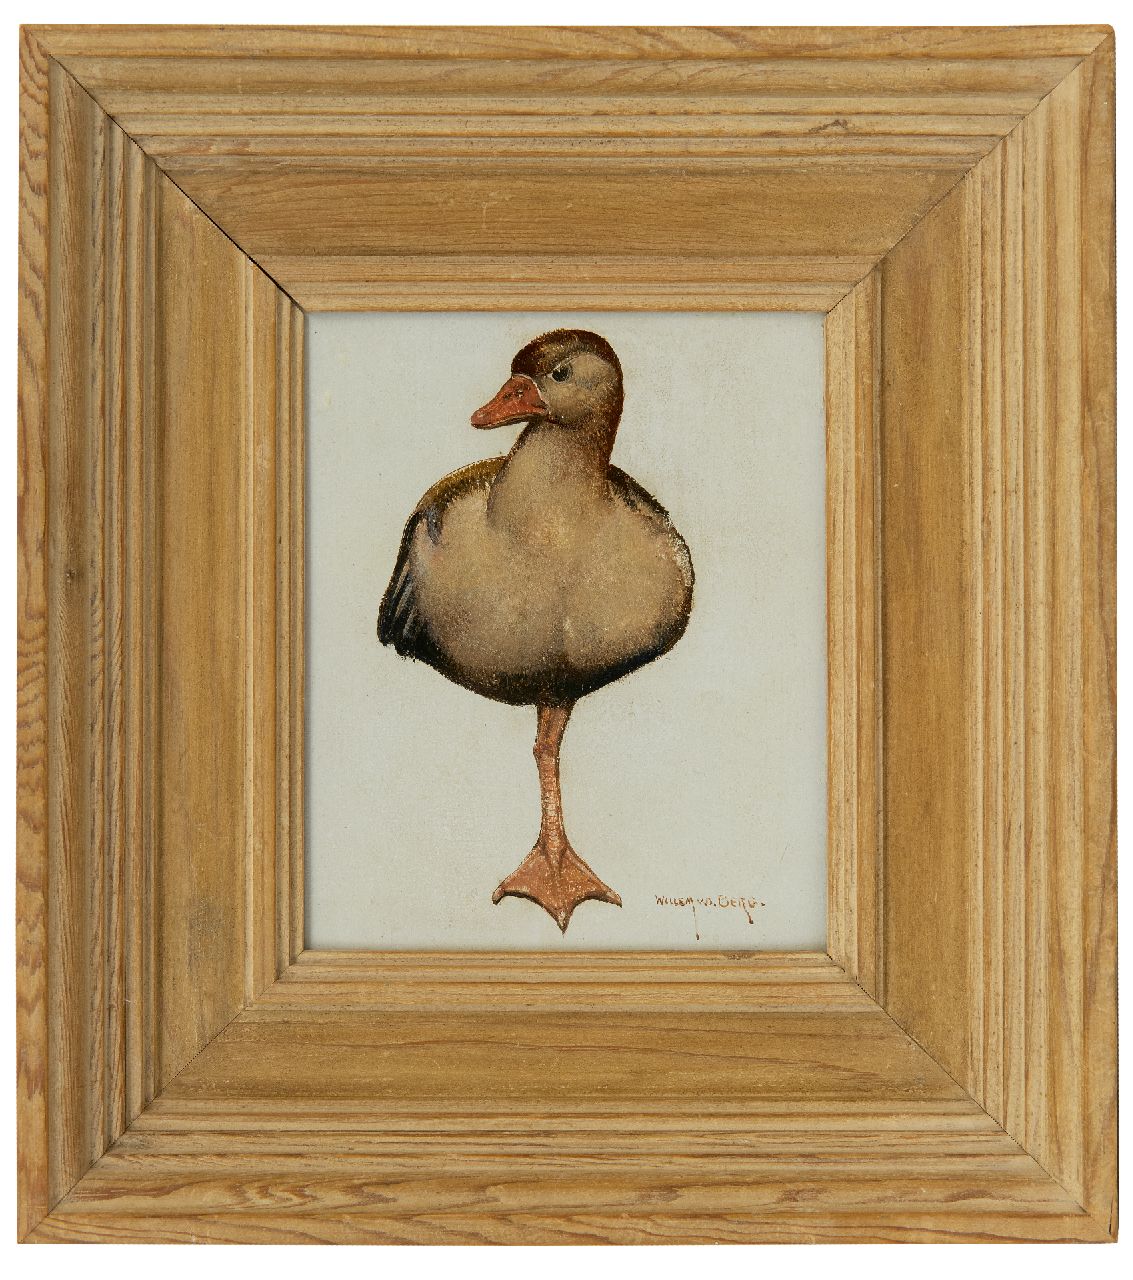 Berg W.H. van den | 'Willem' Hendrik van den Berg | Schilderijen te koop aangeboden | Rustende eend, olieverf op paneel 16,5 x 13,6 cm, gesigneerd rechtsonder